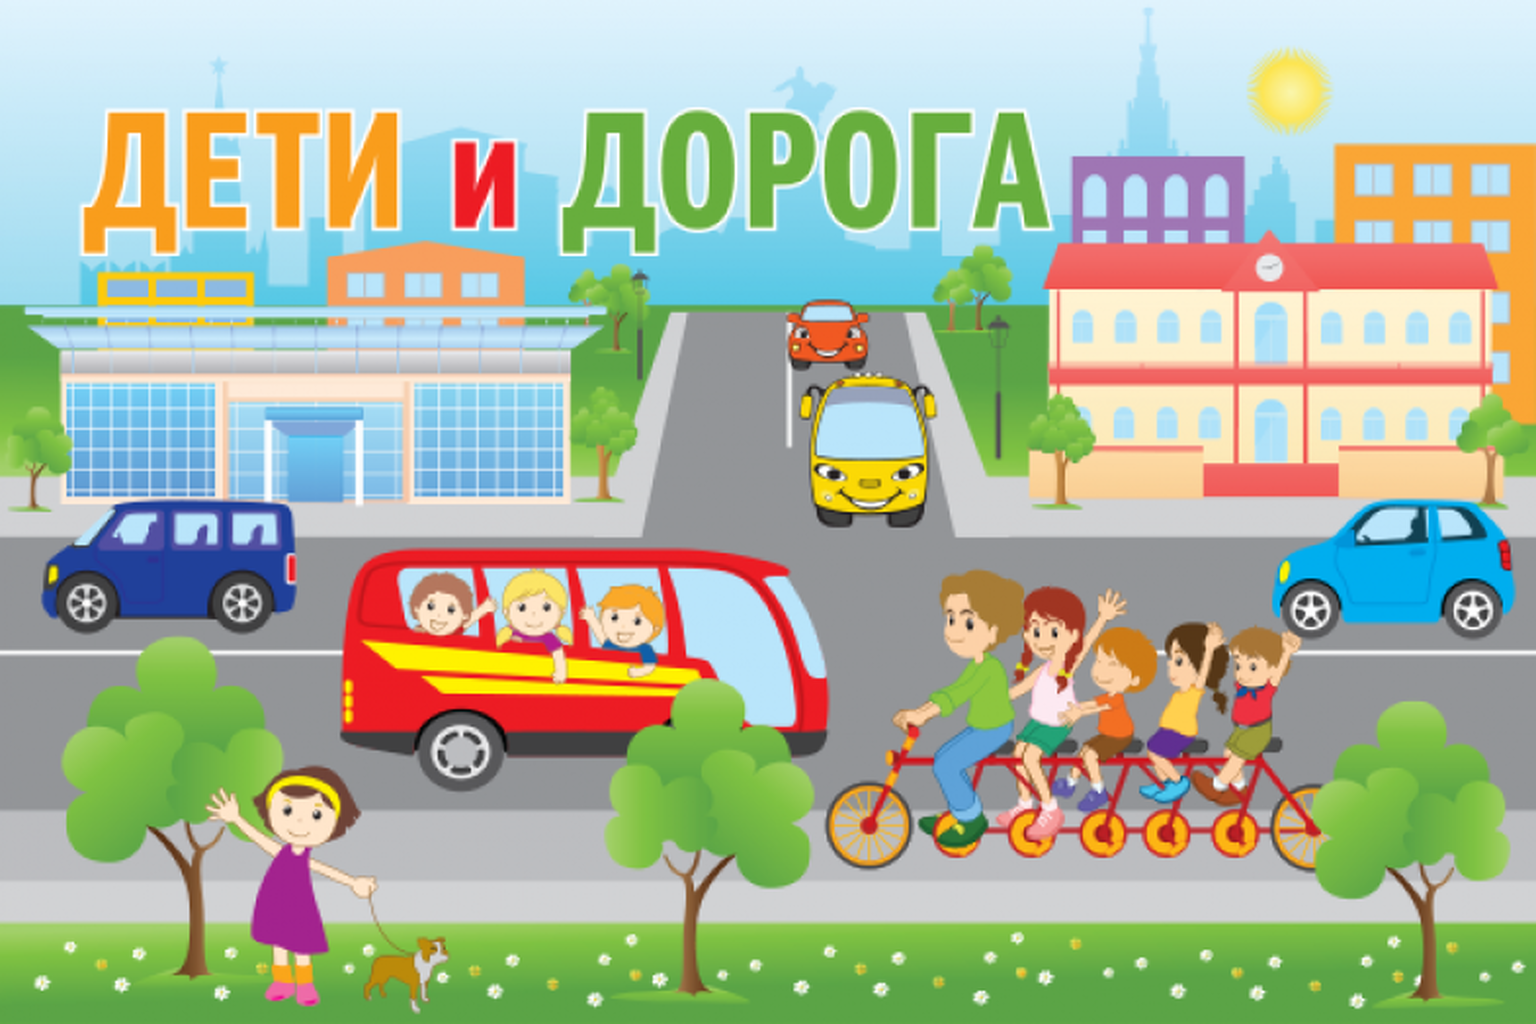 Улица 1 июня. Изображение города для детей. Дети на дороге. Баннер по ПДД для детского сада. Дети улицы.